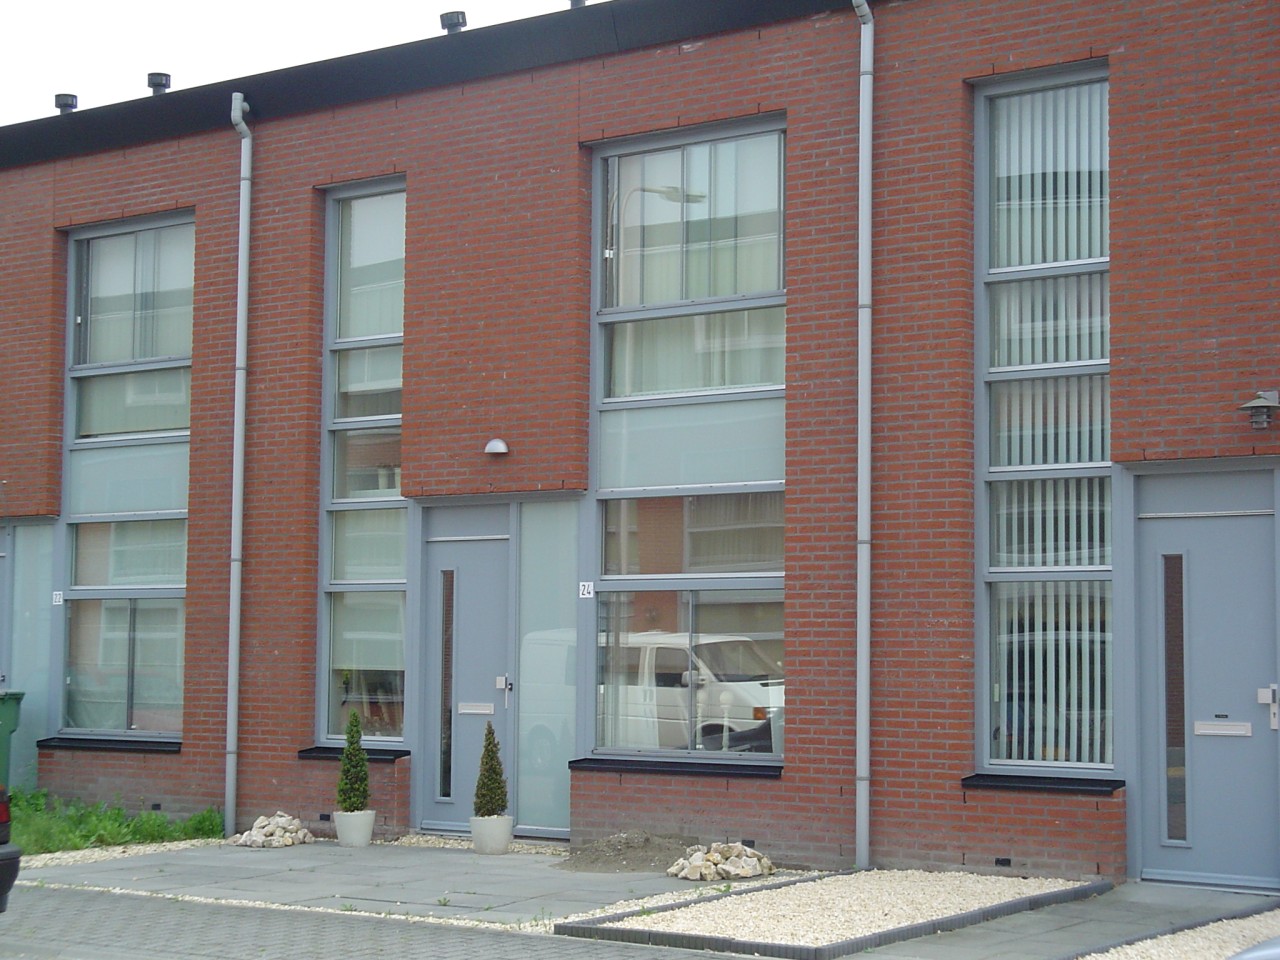 Schelfhorststraat 12, 5035 LG Tilburg, Nederland